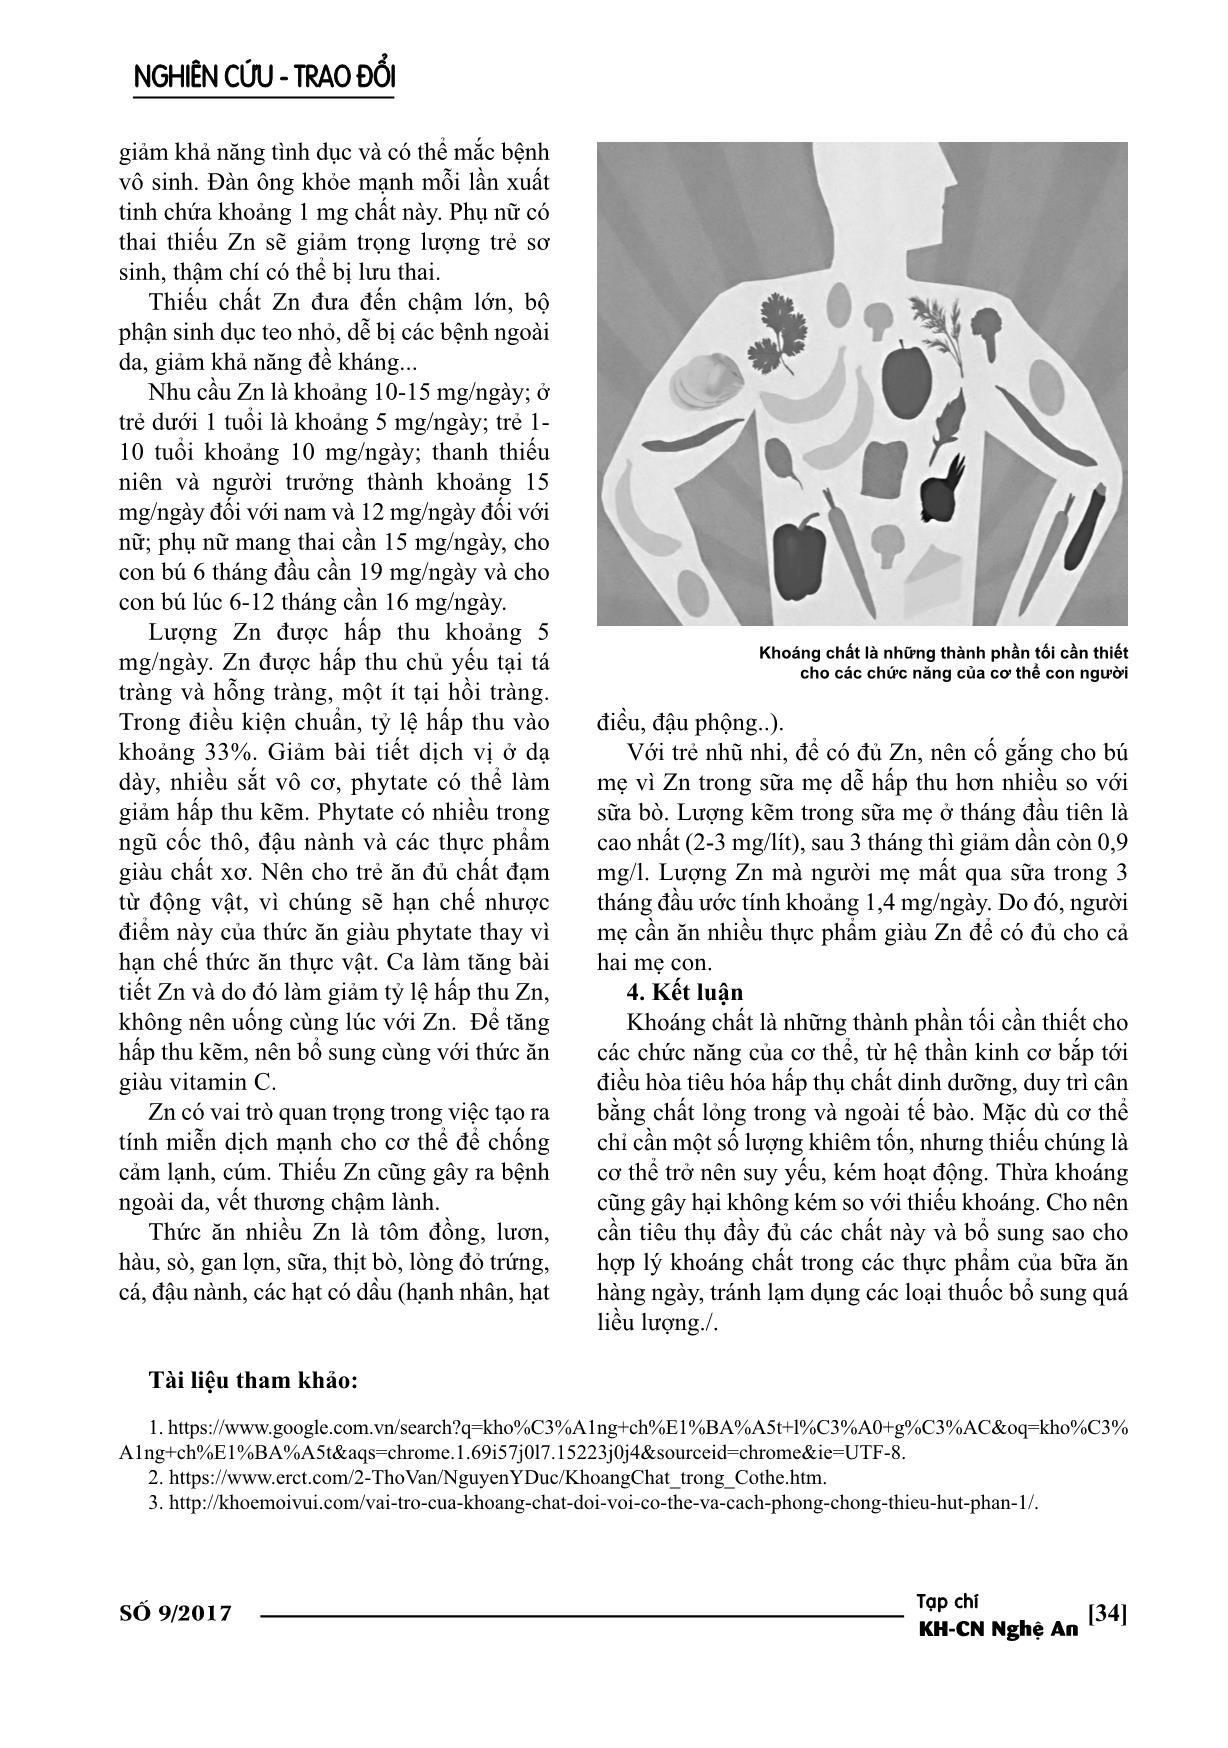 Vai trò của khoáng chất đối với cơ thể con ngườ trang 8